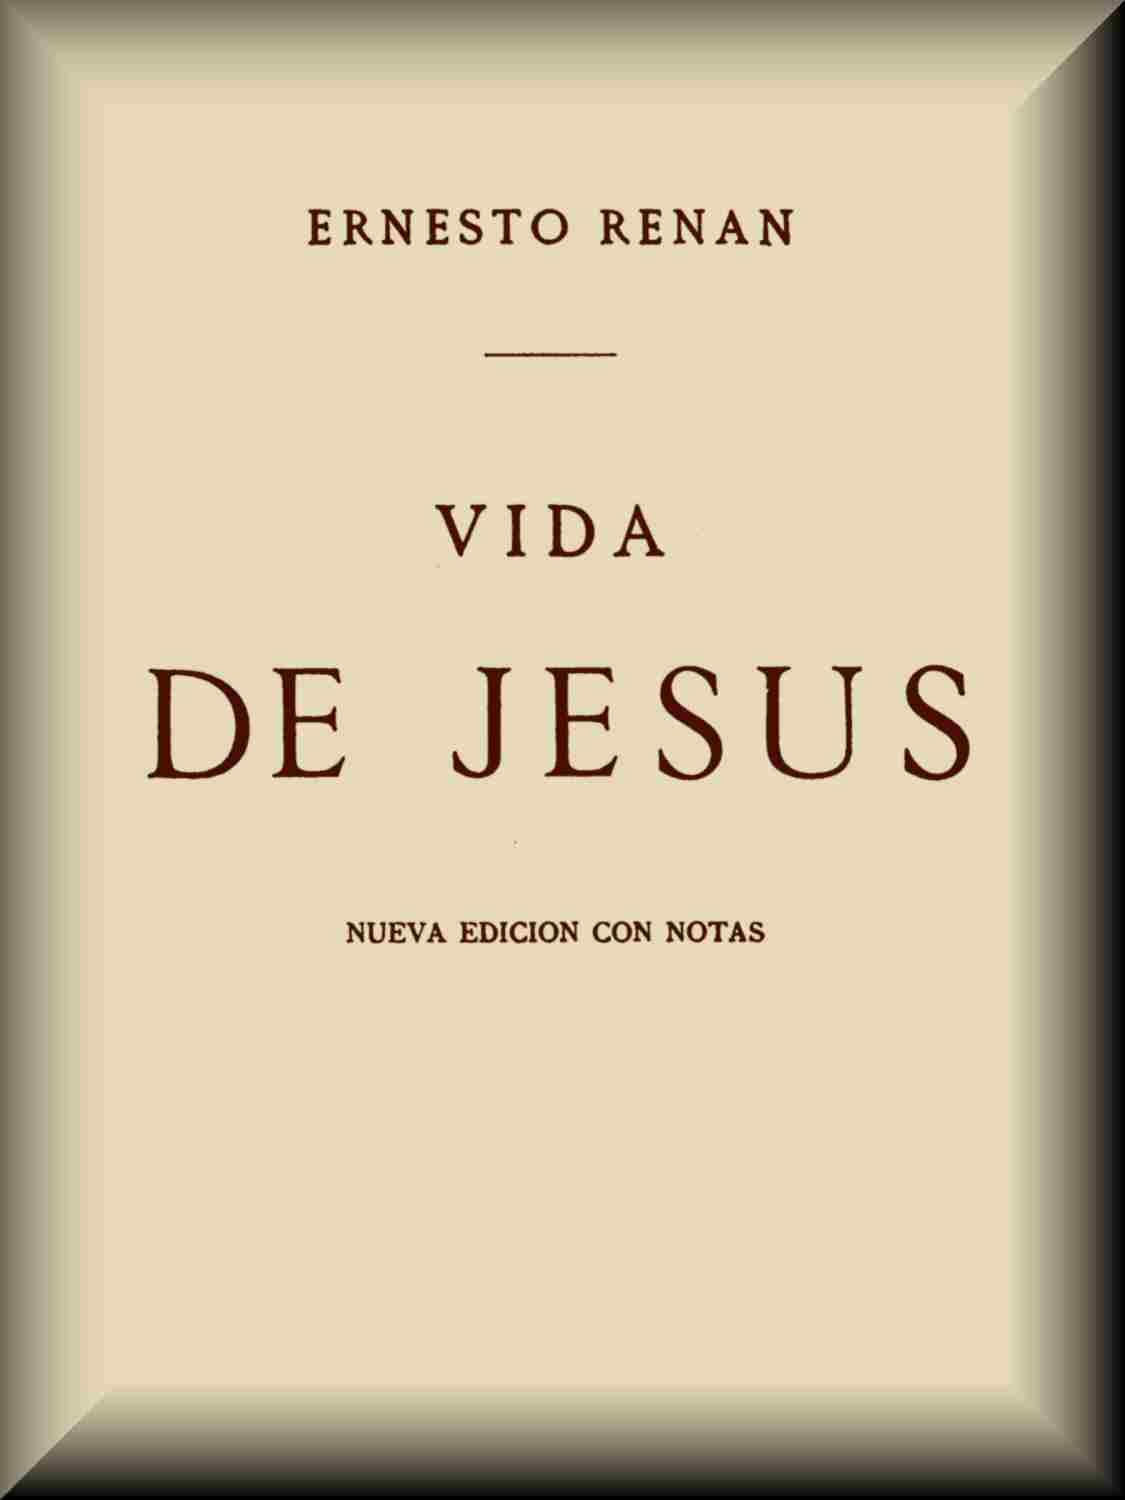 Vida de Jesús, by Ernesto Renán—A Project Gutenberg eBook